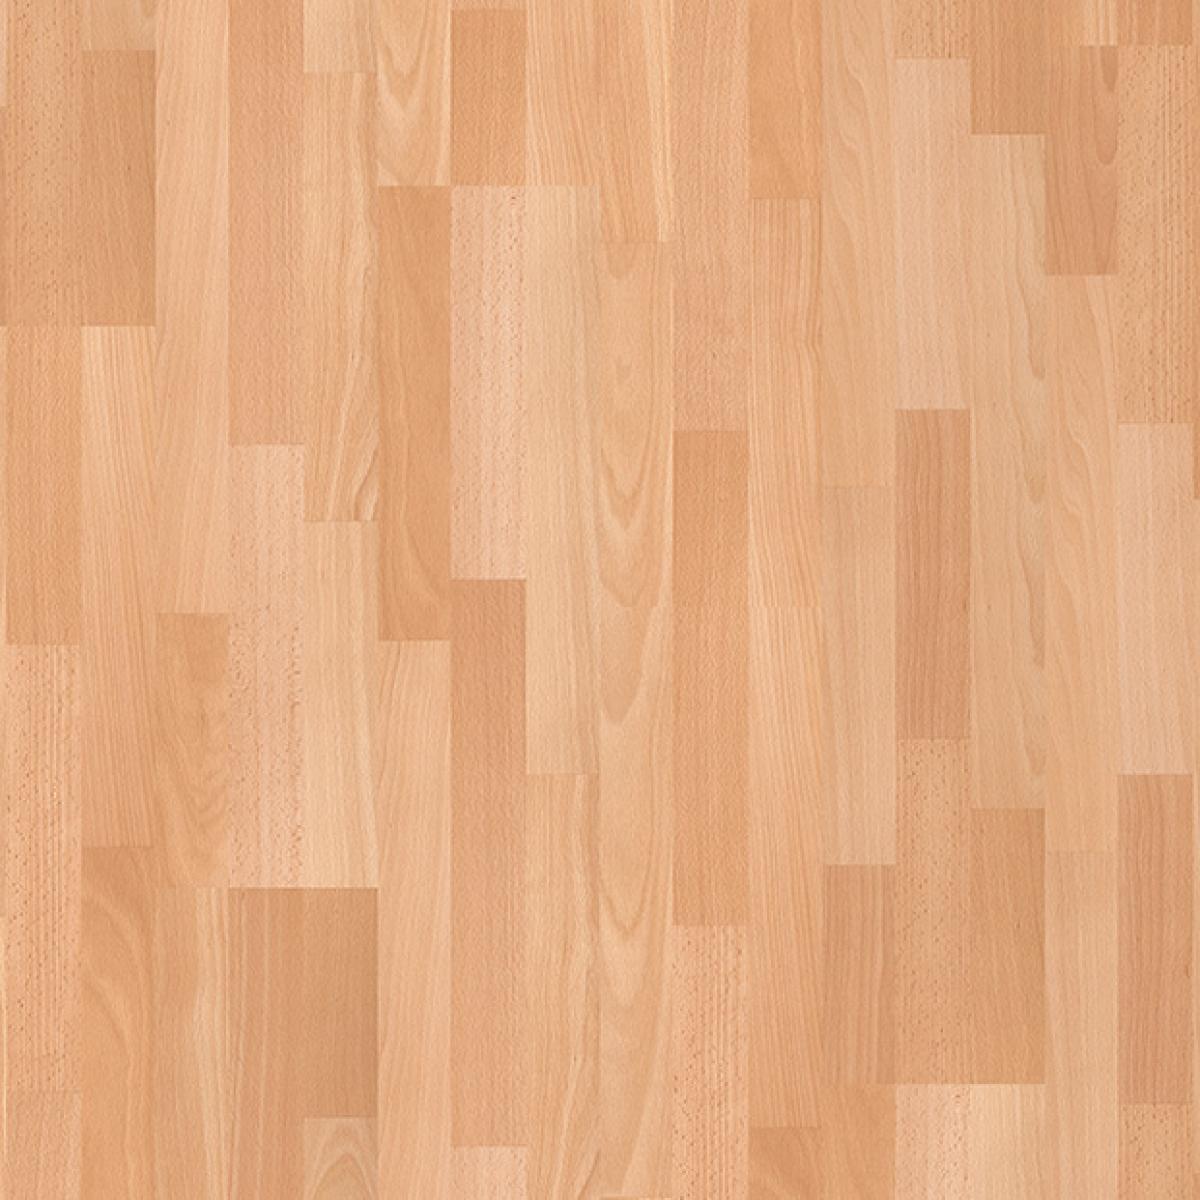 Enhanced Beech 3 Strip Laminate Flooring, Beech Wood Flooring Uk